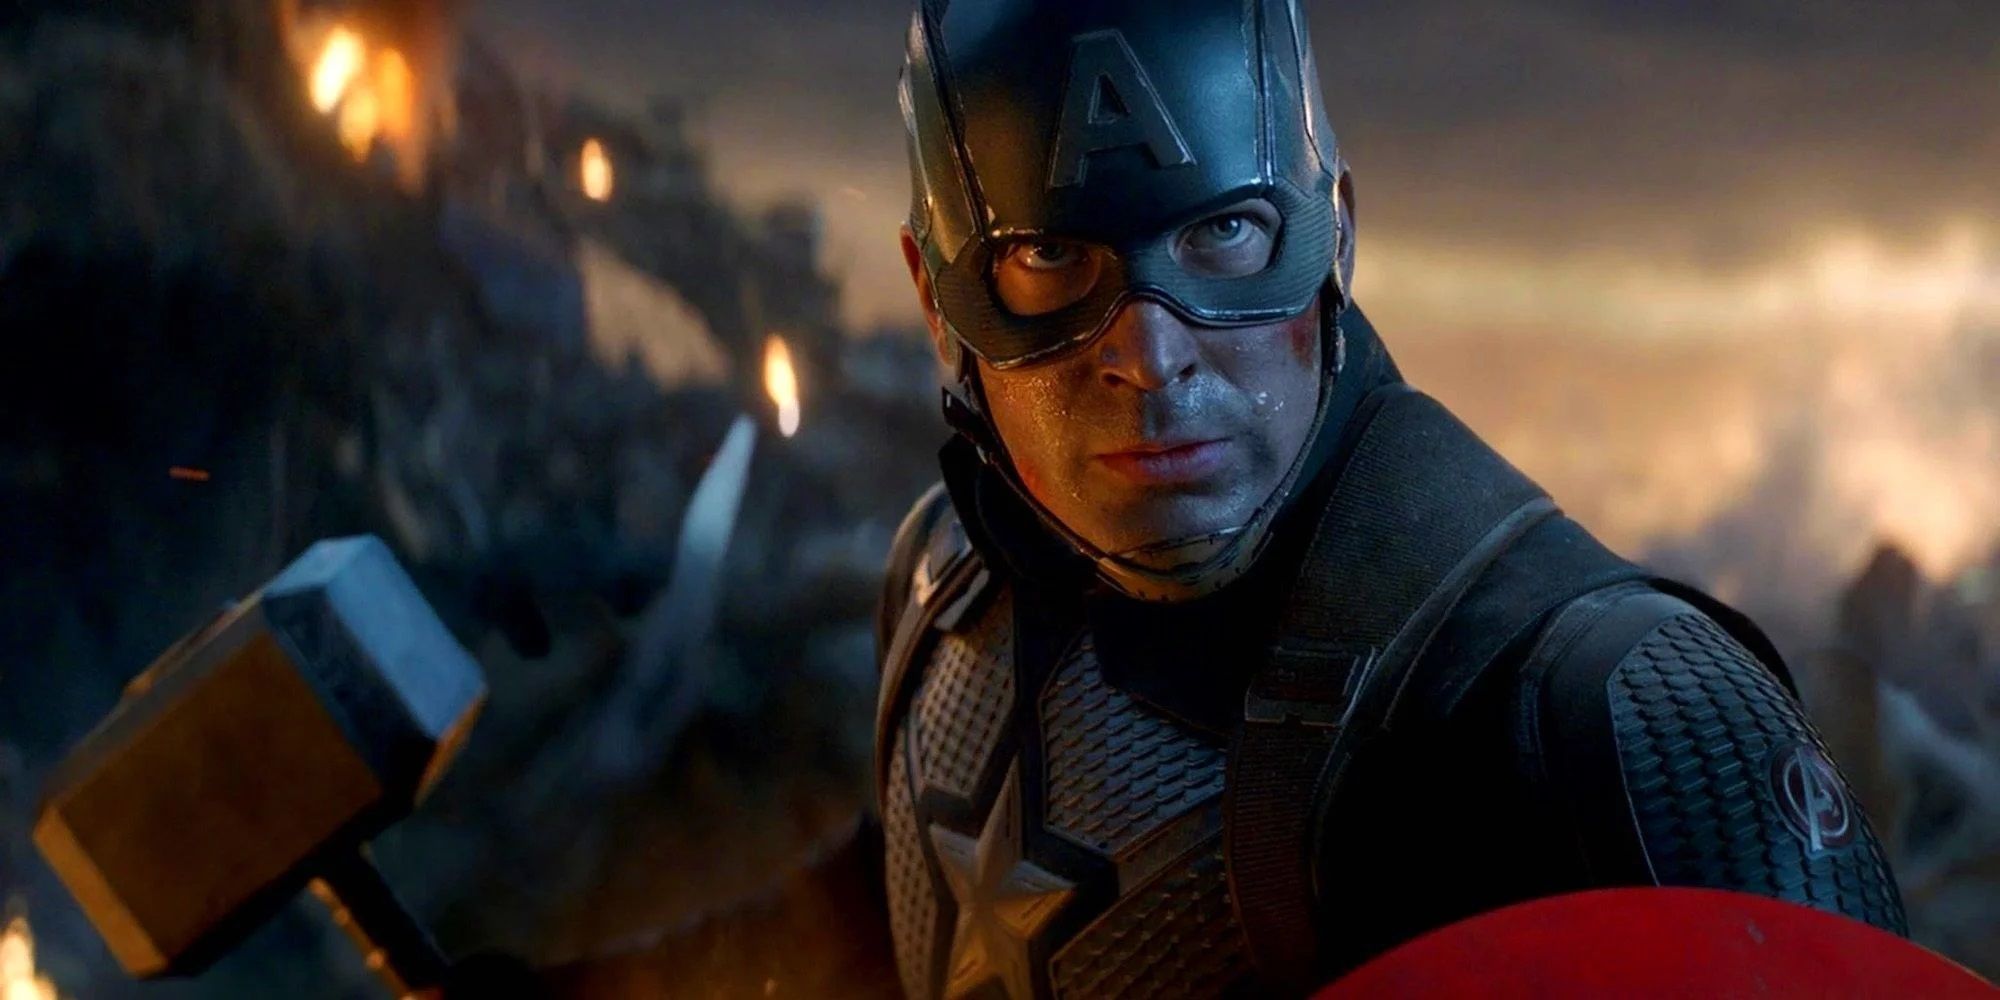 Captain America holds Thor's hammer in Avengers Endgame